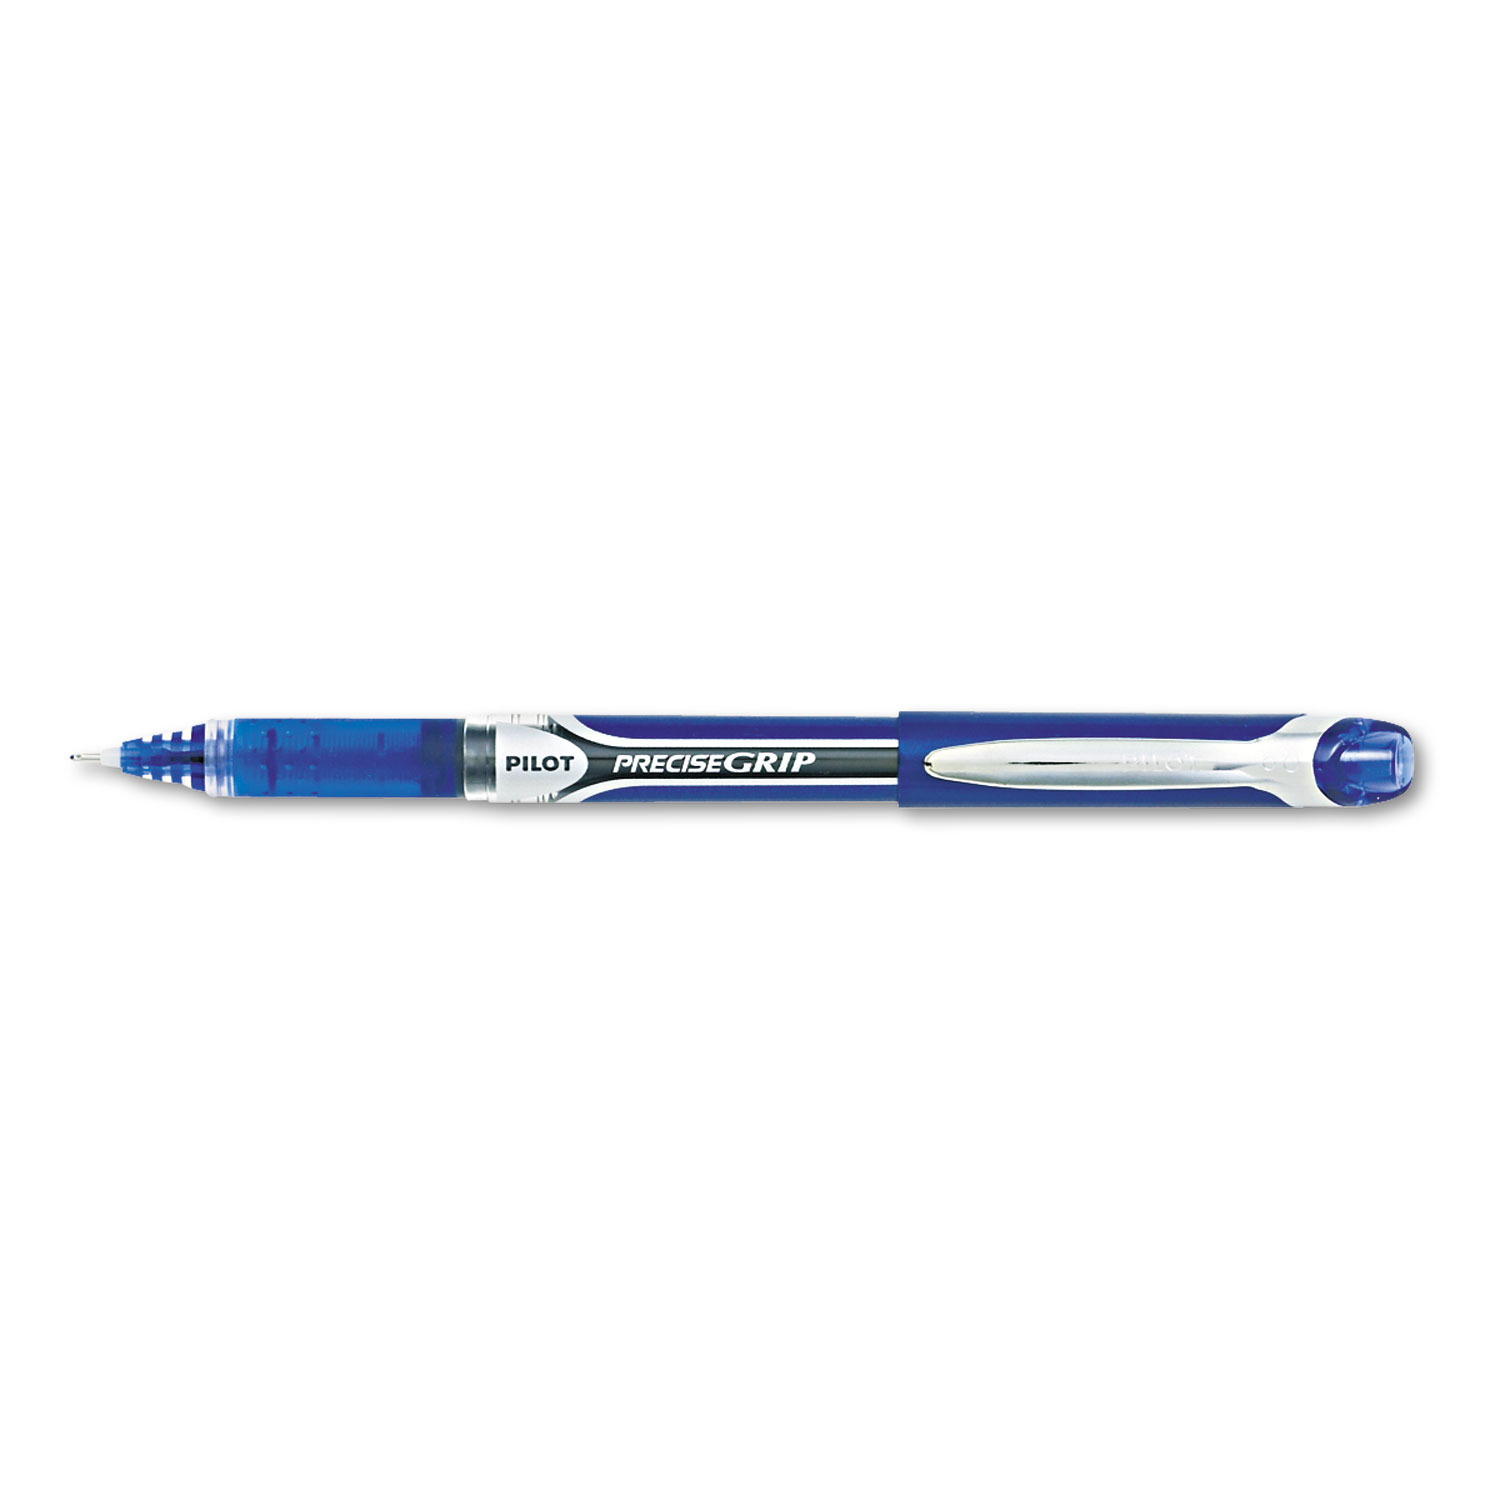 Precise Grip Roller Ball Stick Pen, Blue Ink, 1mm